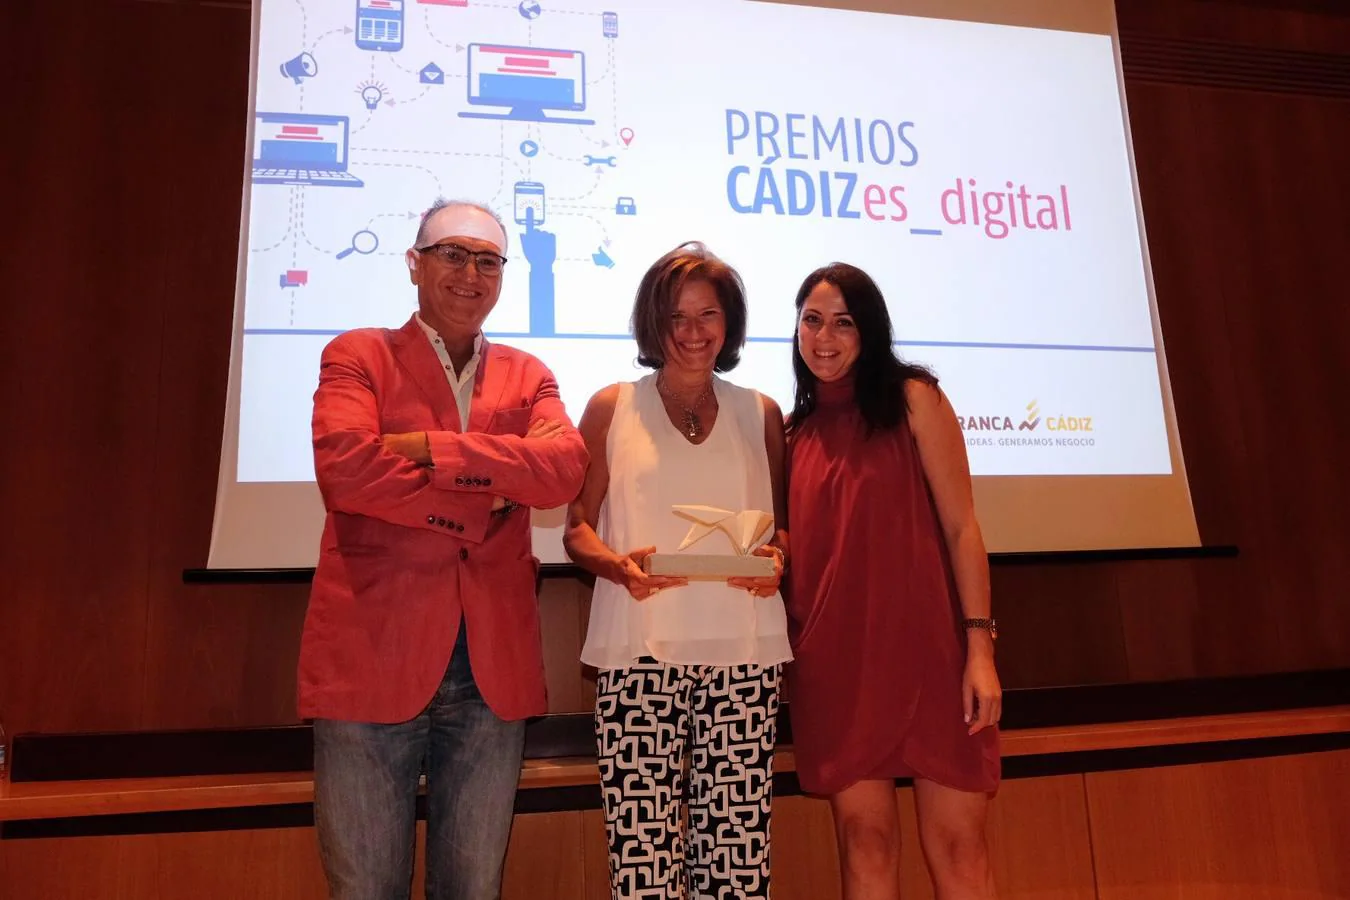 Cádizes_digital, unos premios para los mejores emprendedores en la red